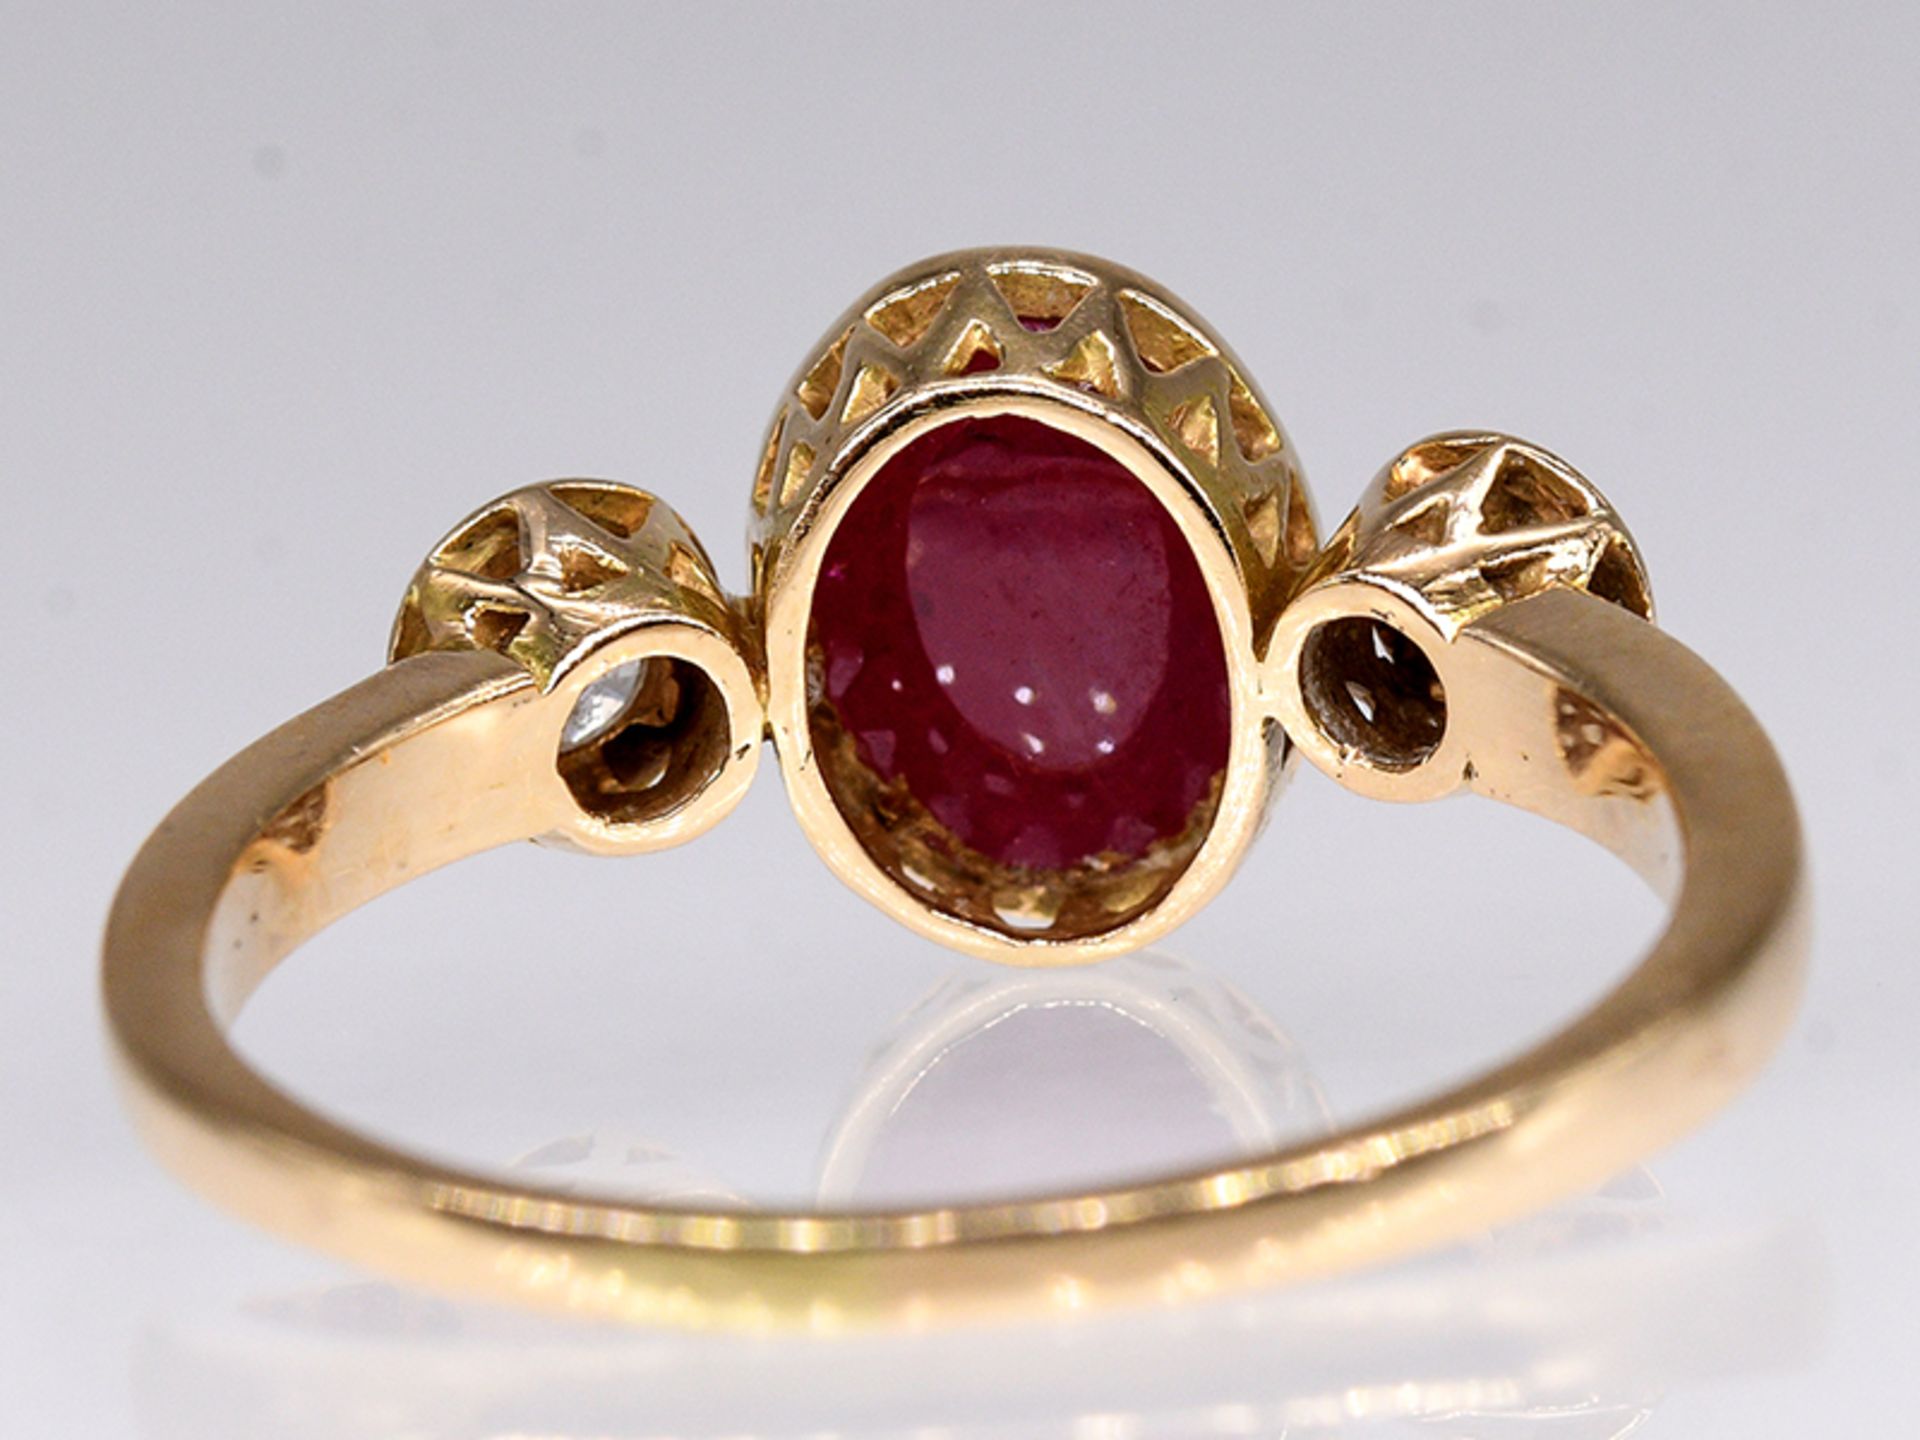 Ring mit Rubin-Cabochon und 2 Brillanten, zus. ca. 0,15 ct, 80- er Jahre. 585/- Gelbgold. - Image 4 of 4